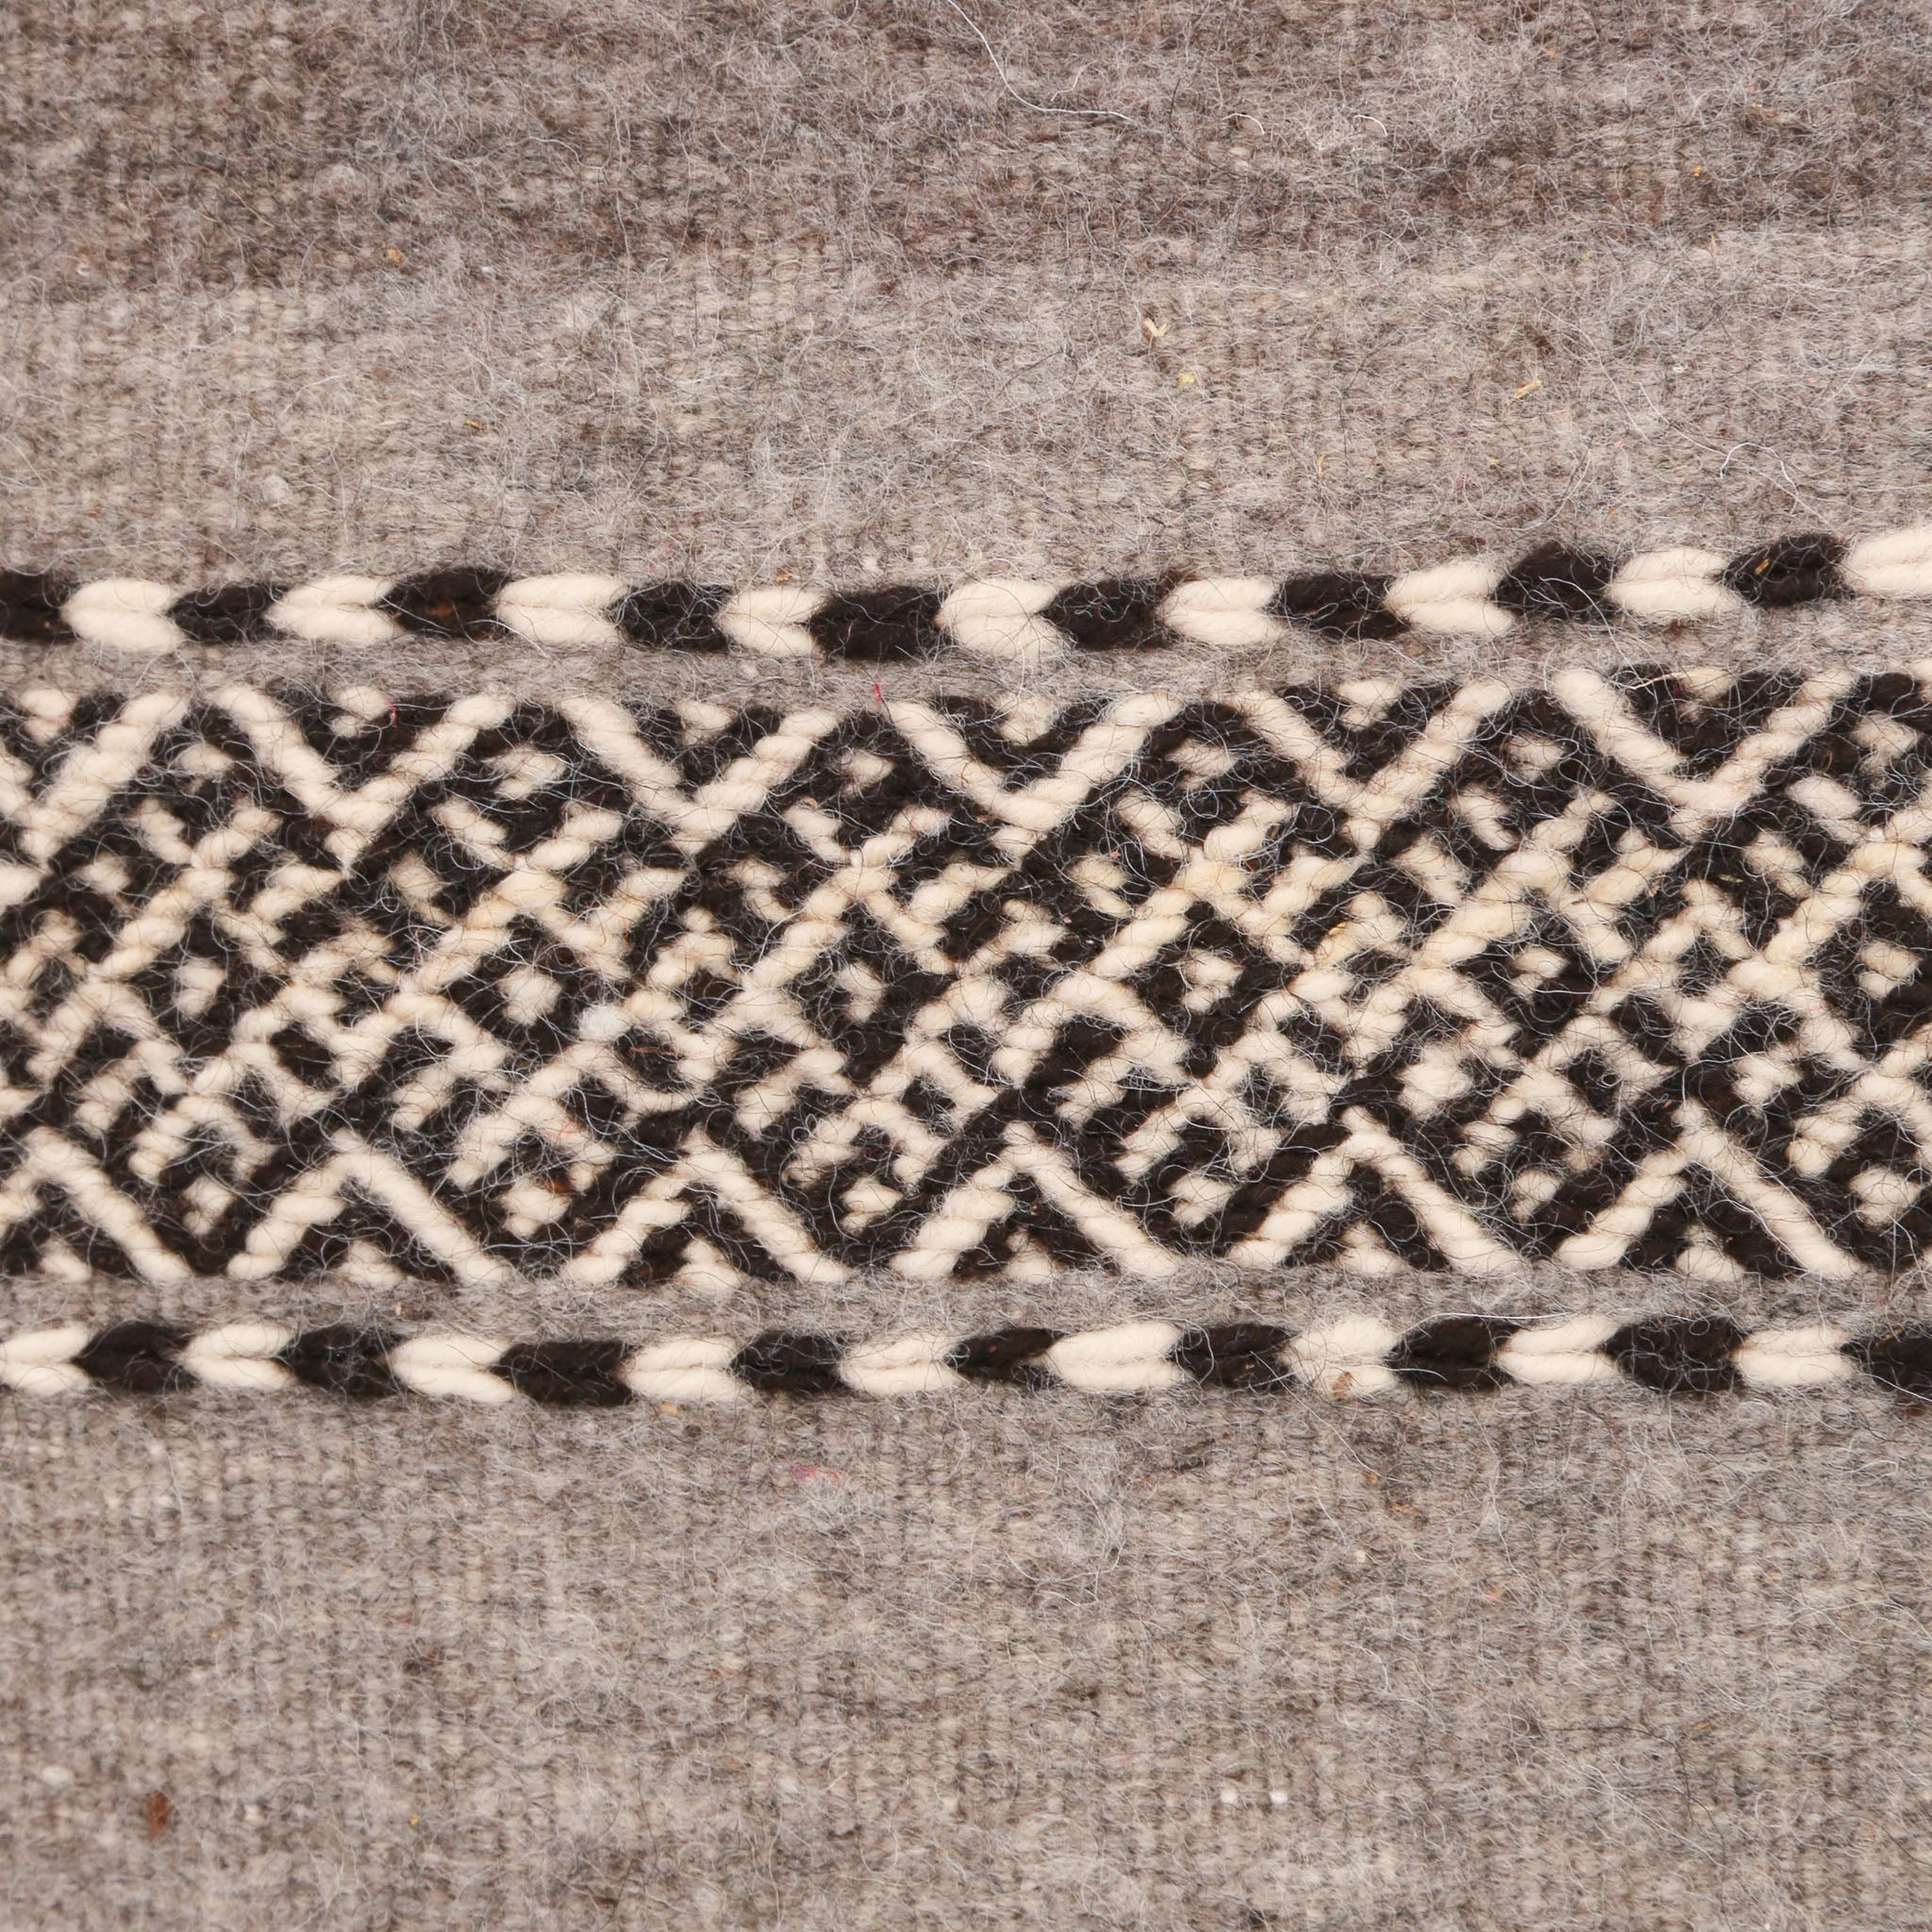 dettaglio della tessitura di un tappeto artigianale che crea dei disegni geometrici